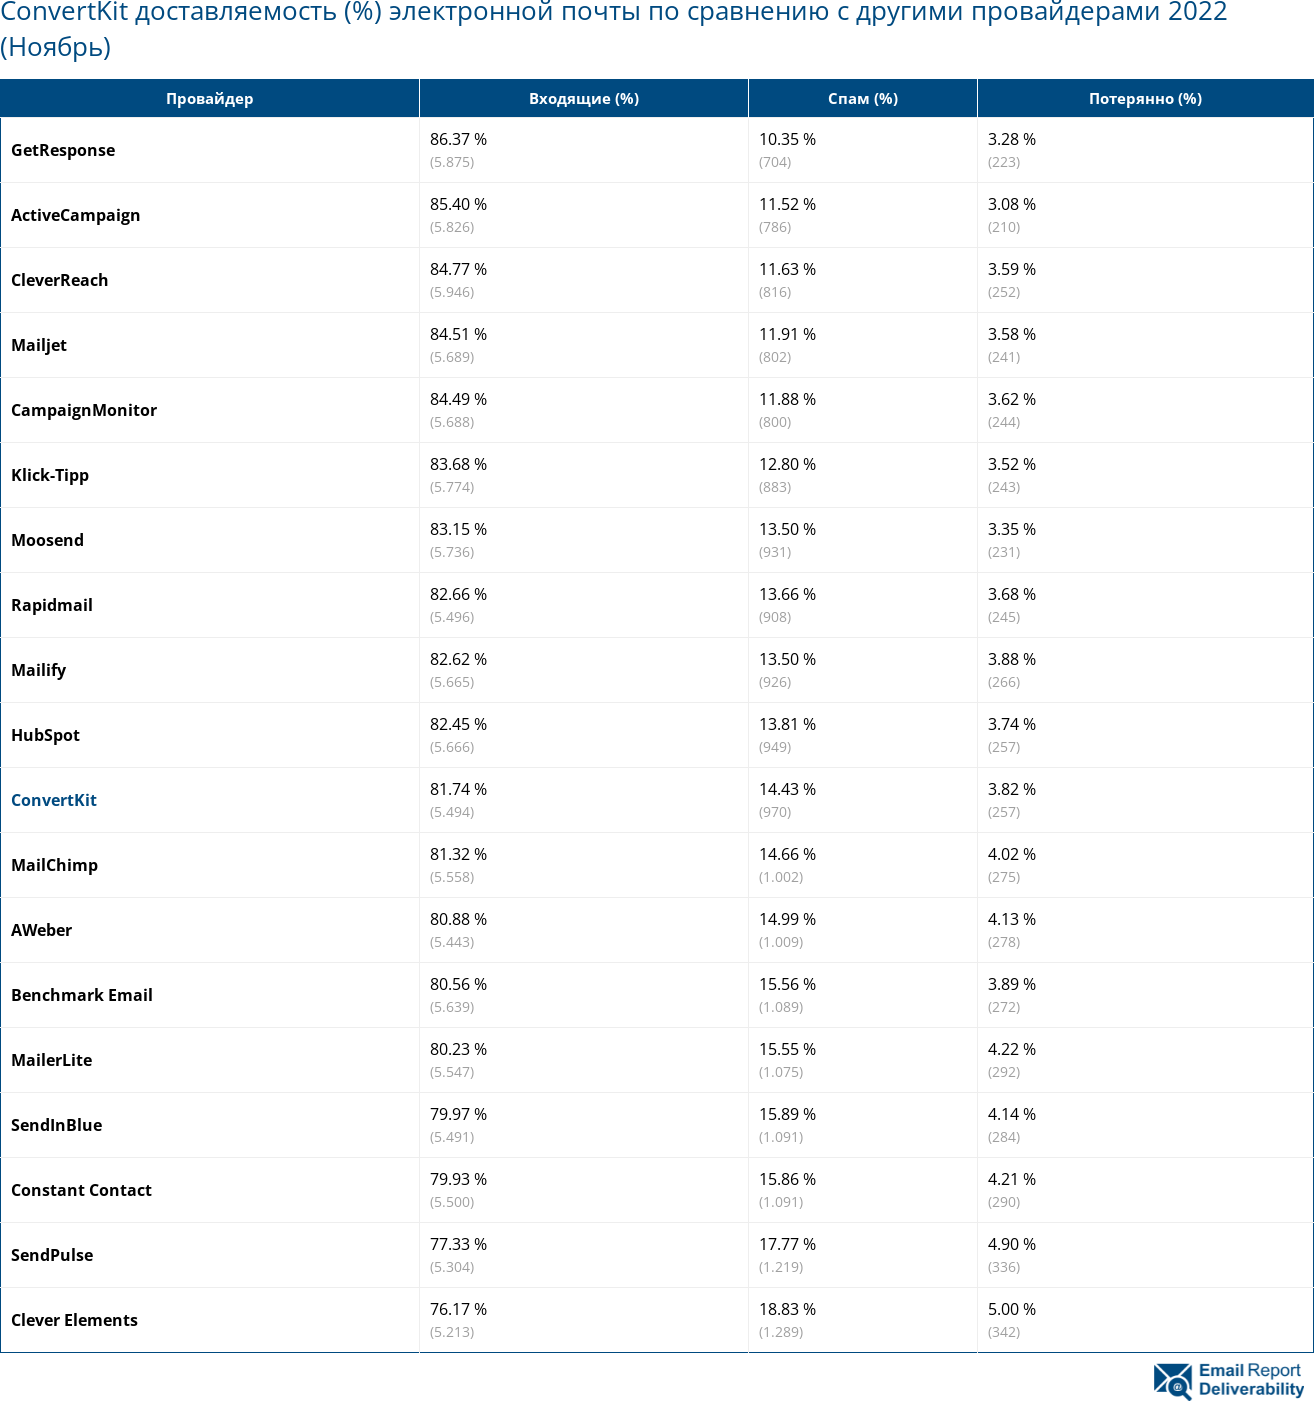 ConvertKit доставляемость (%) электронной почты по сравнению с другими провайдерами 2022 (Ноябрь)